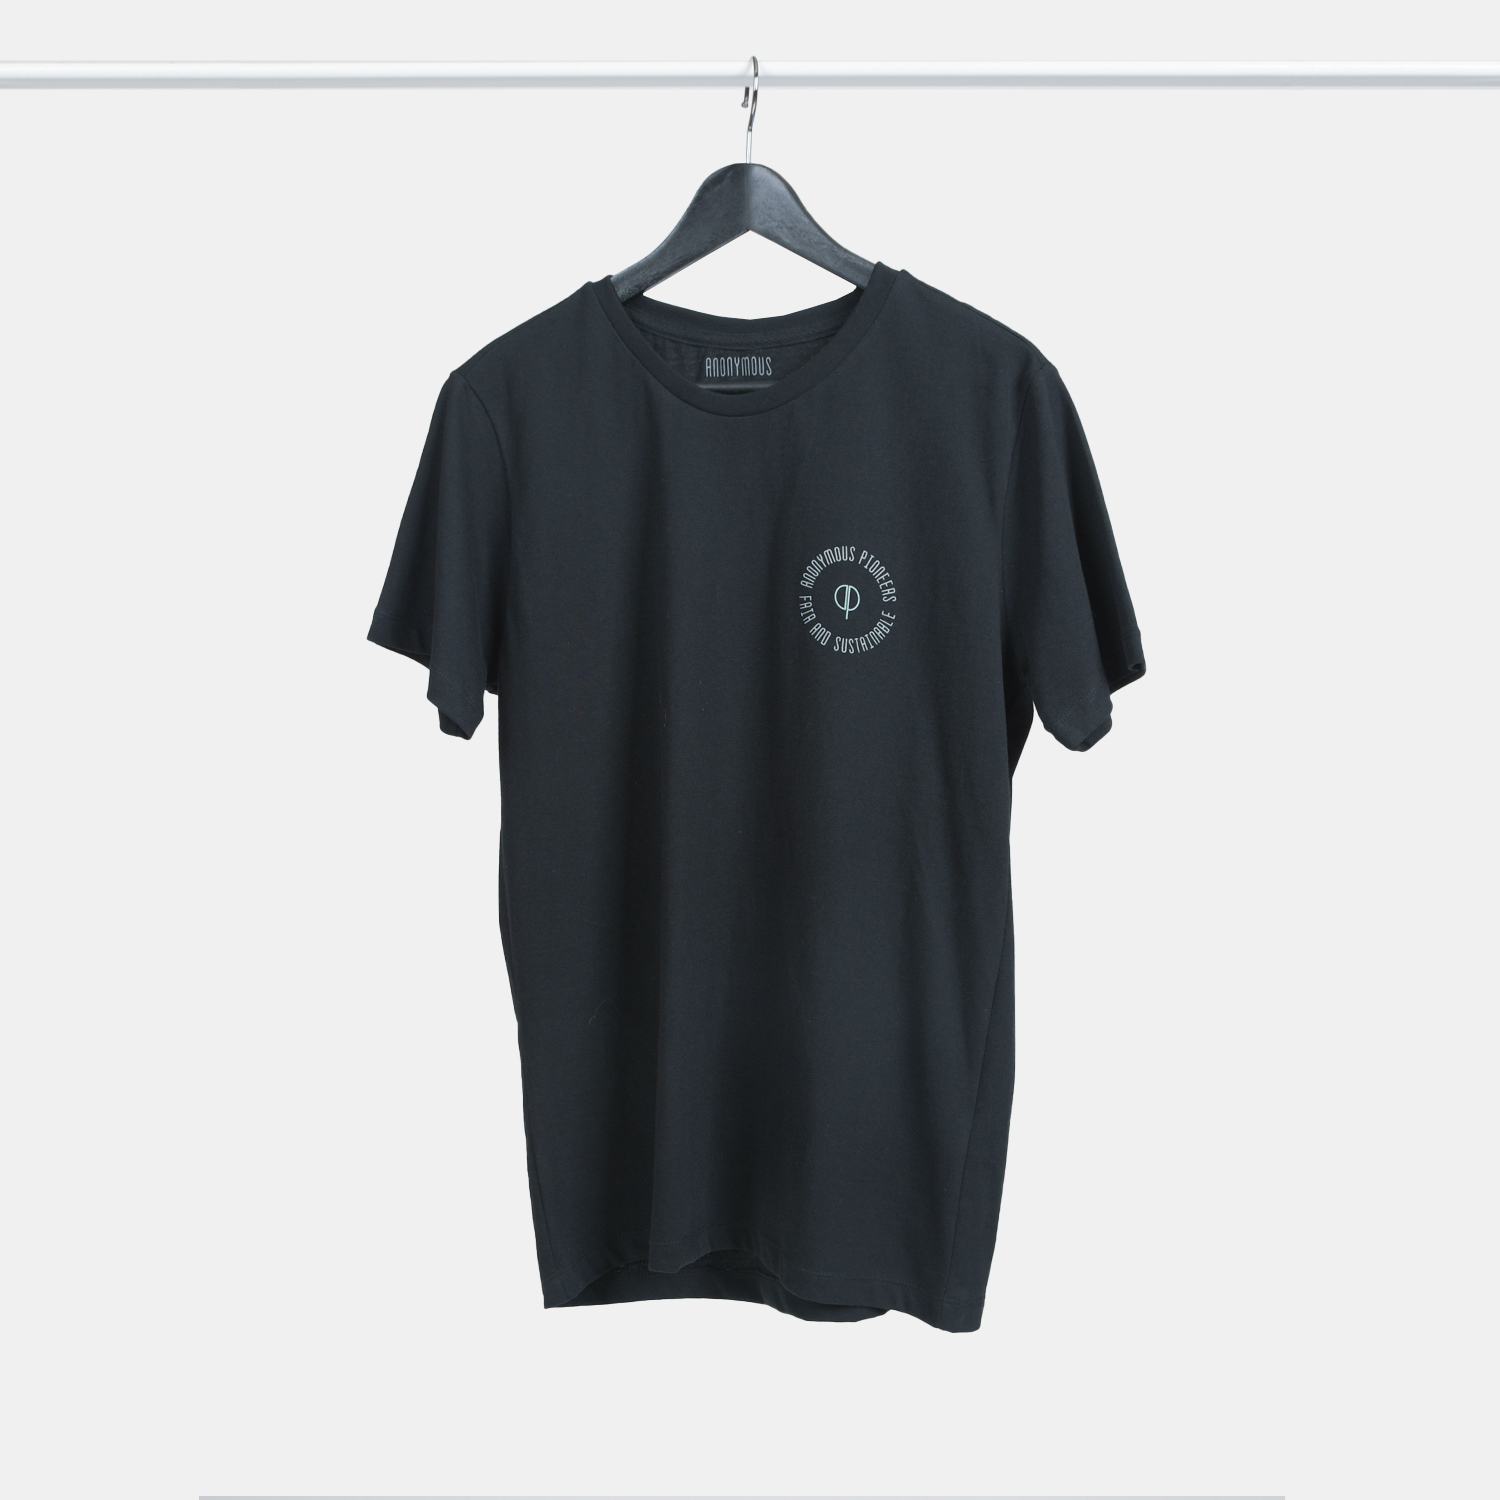 Genanvendt T-shirt i sort med print til mænd fra A-PIONEER